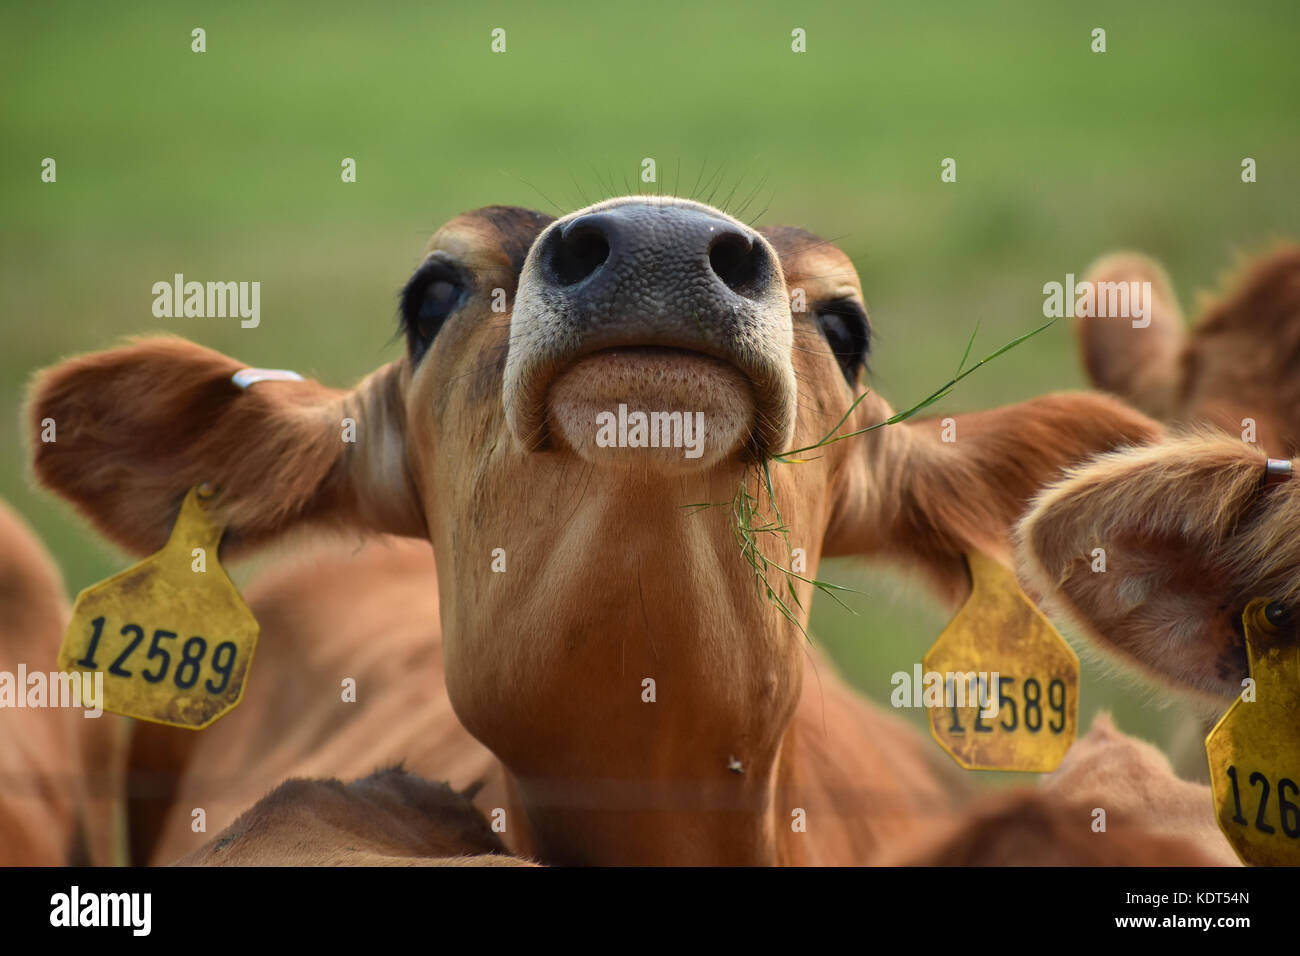 Kuh mit seinem Haupt in der Luft essen Gras beim Tragen der Kennzeichnungen Stockfoto